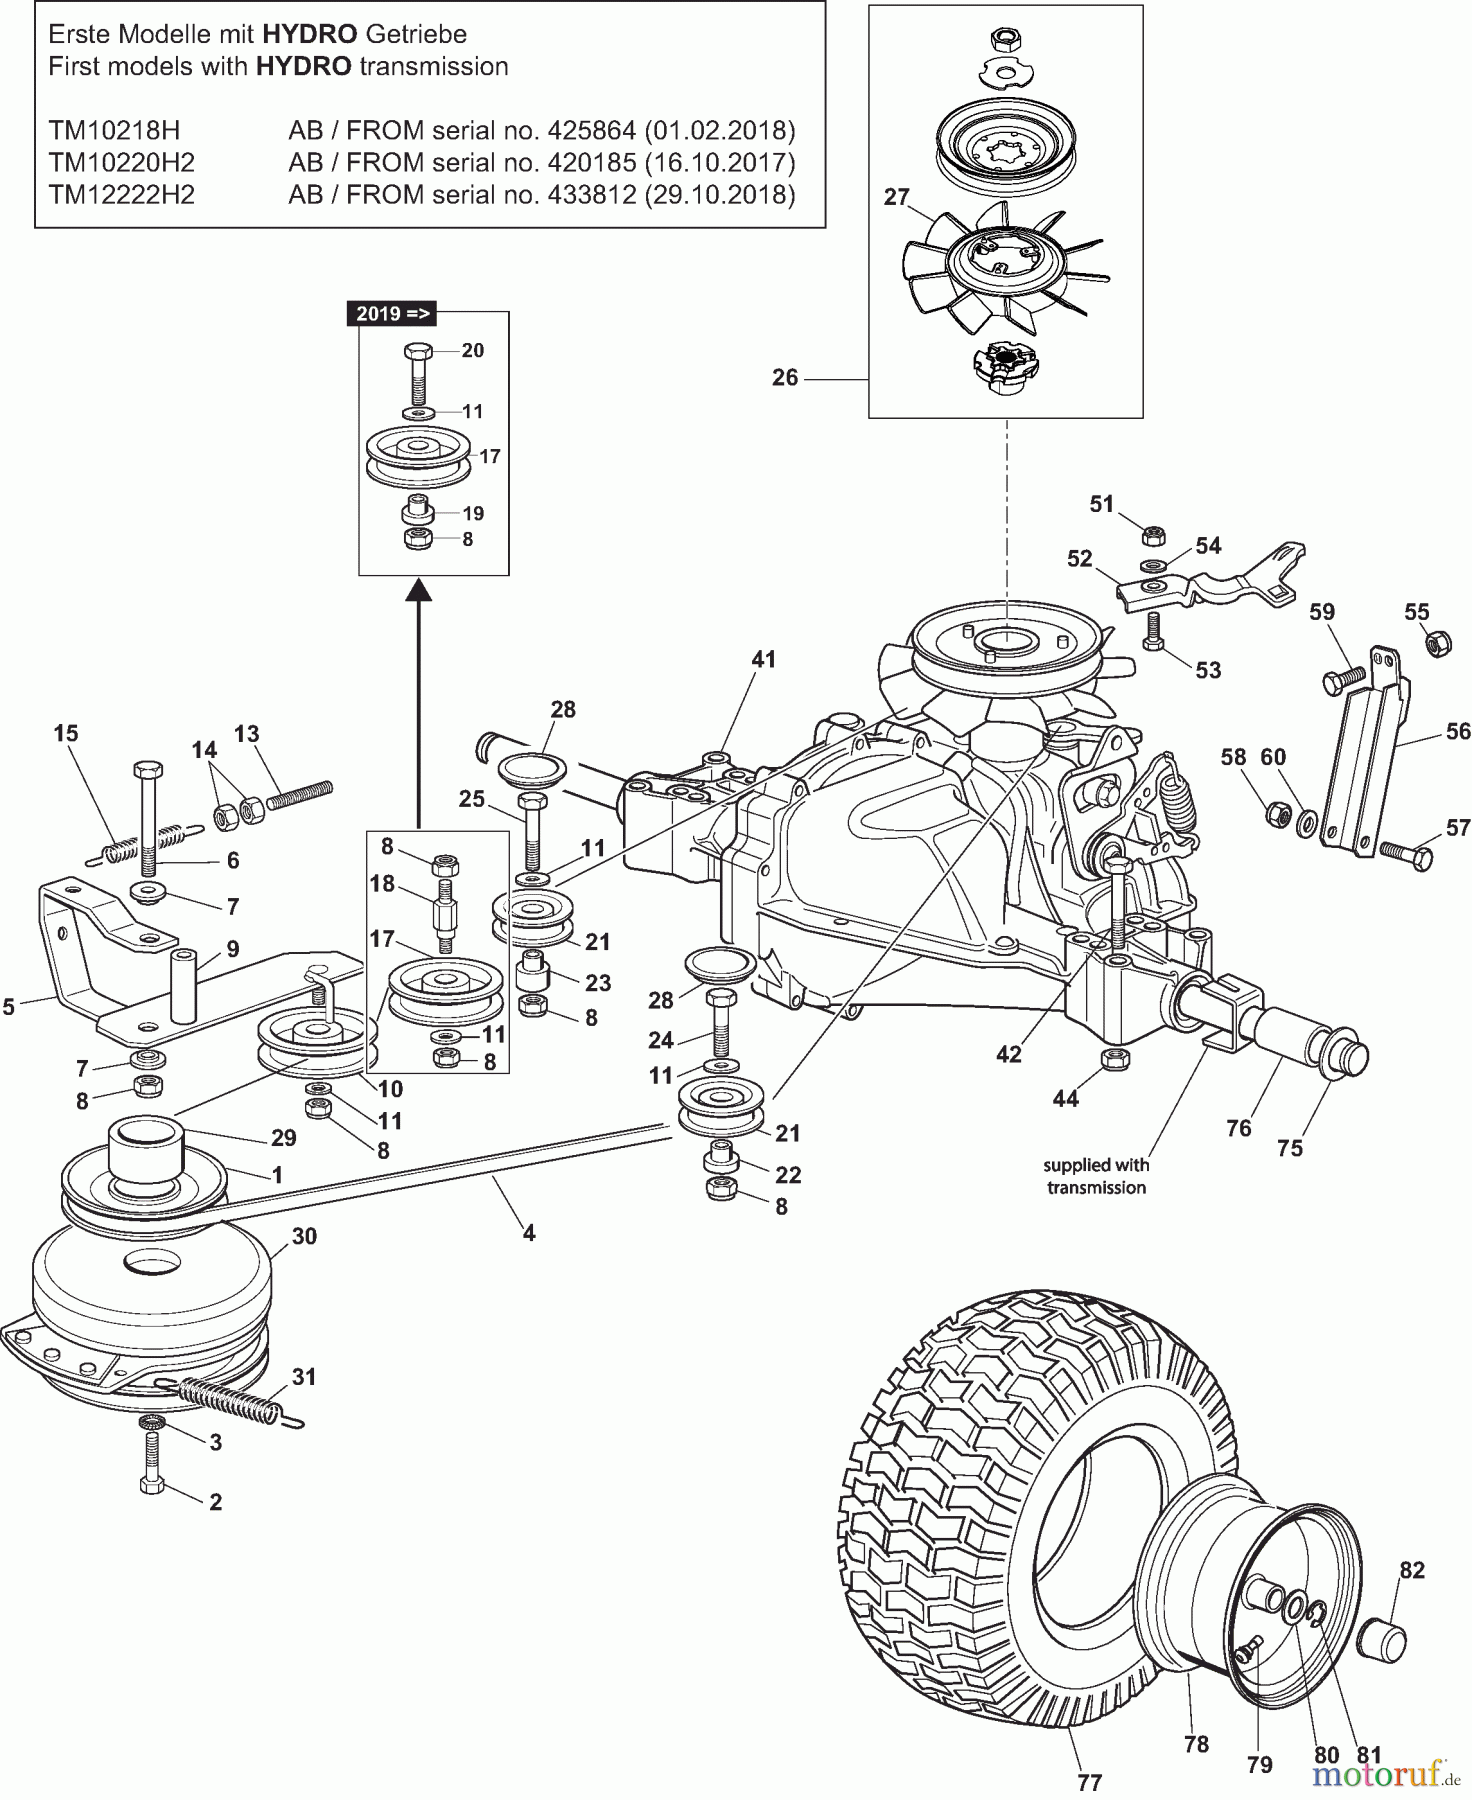  Dolmar Rasentraktoren TM10218H TM10218H (2015-2019) 6ya  Getriebe HYDRO